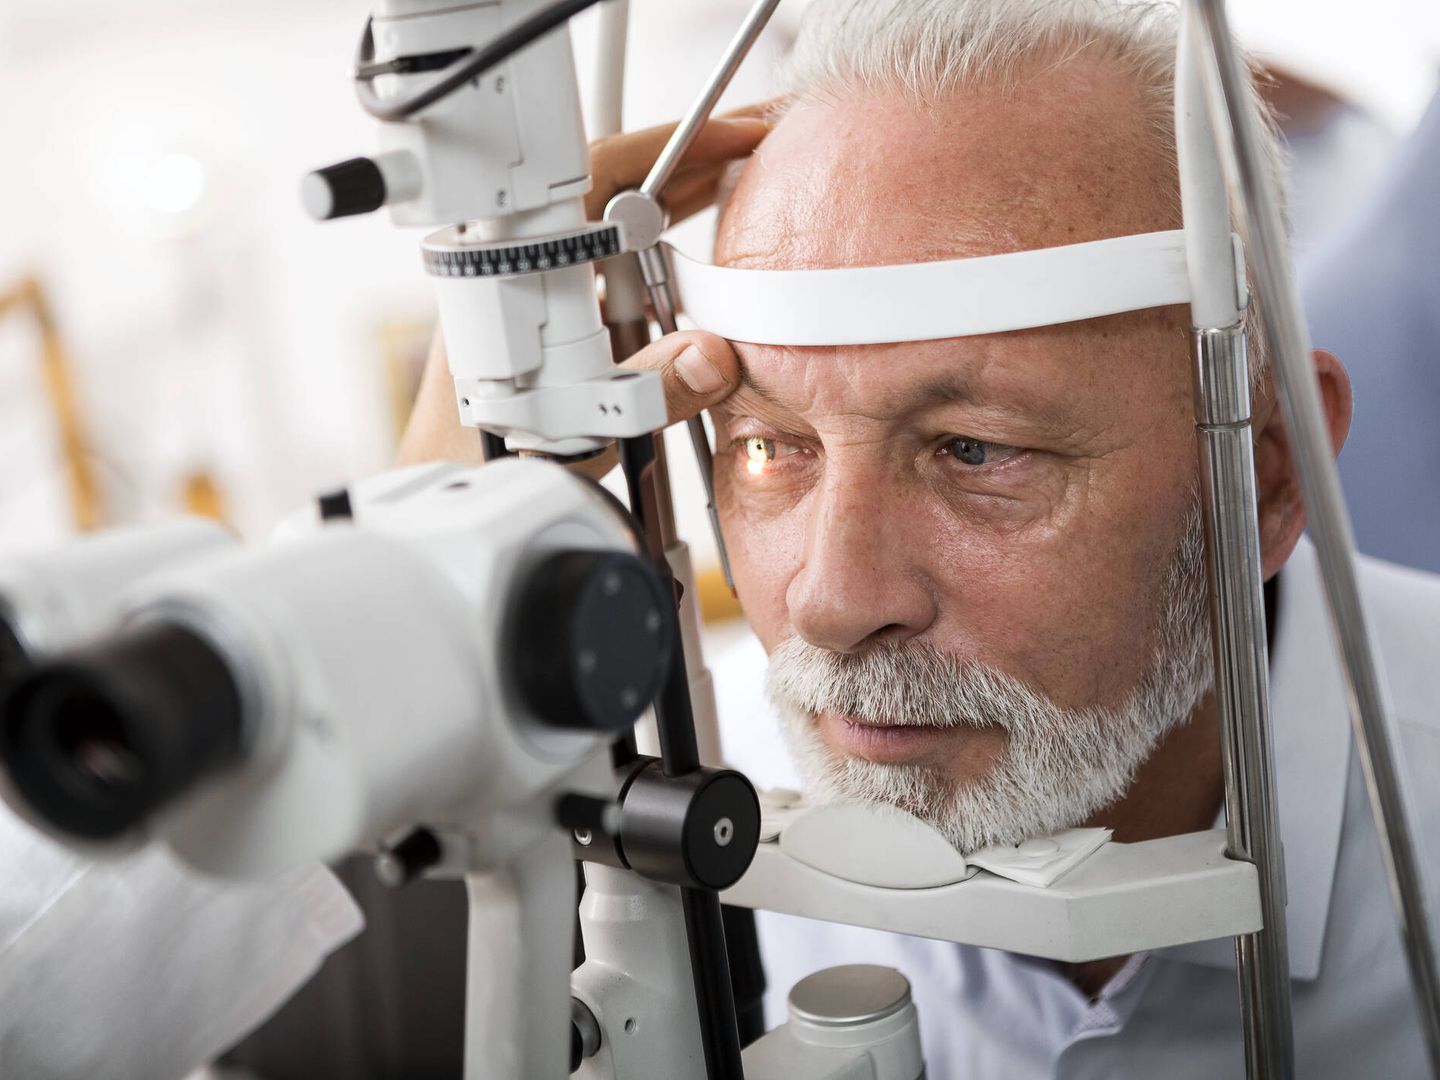 Tomar la tensión ocular periódicamente es la mejor forma de prevenir el glaucoma. (iStock)